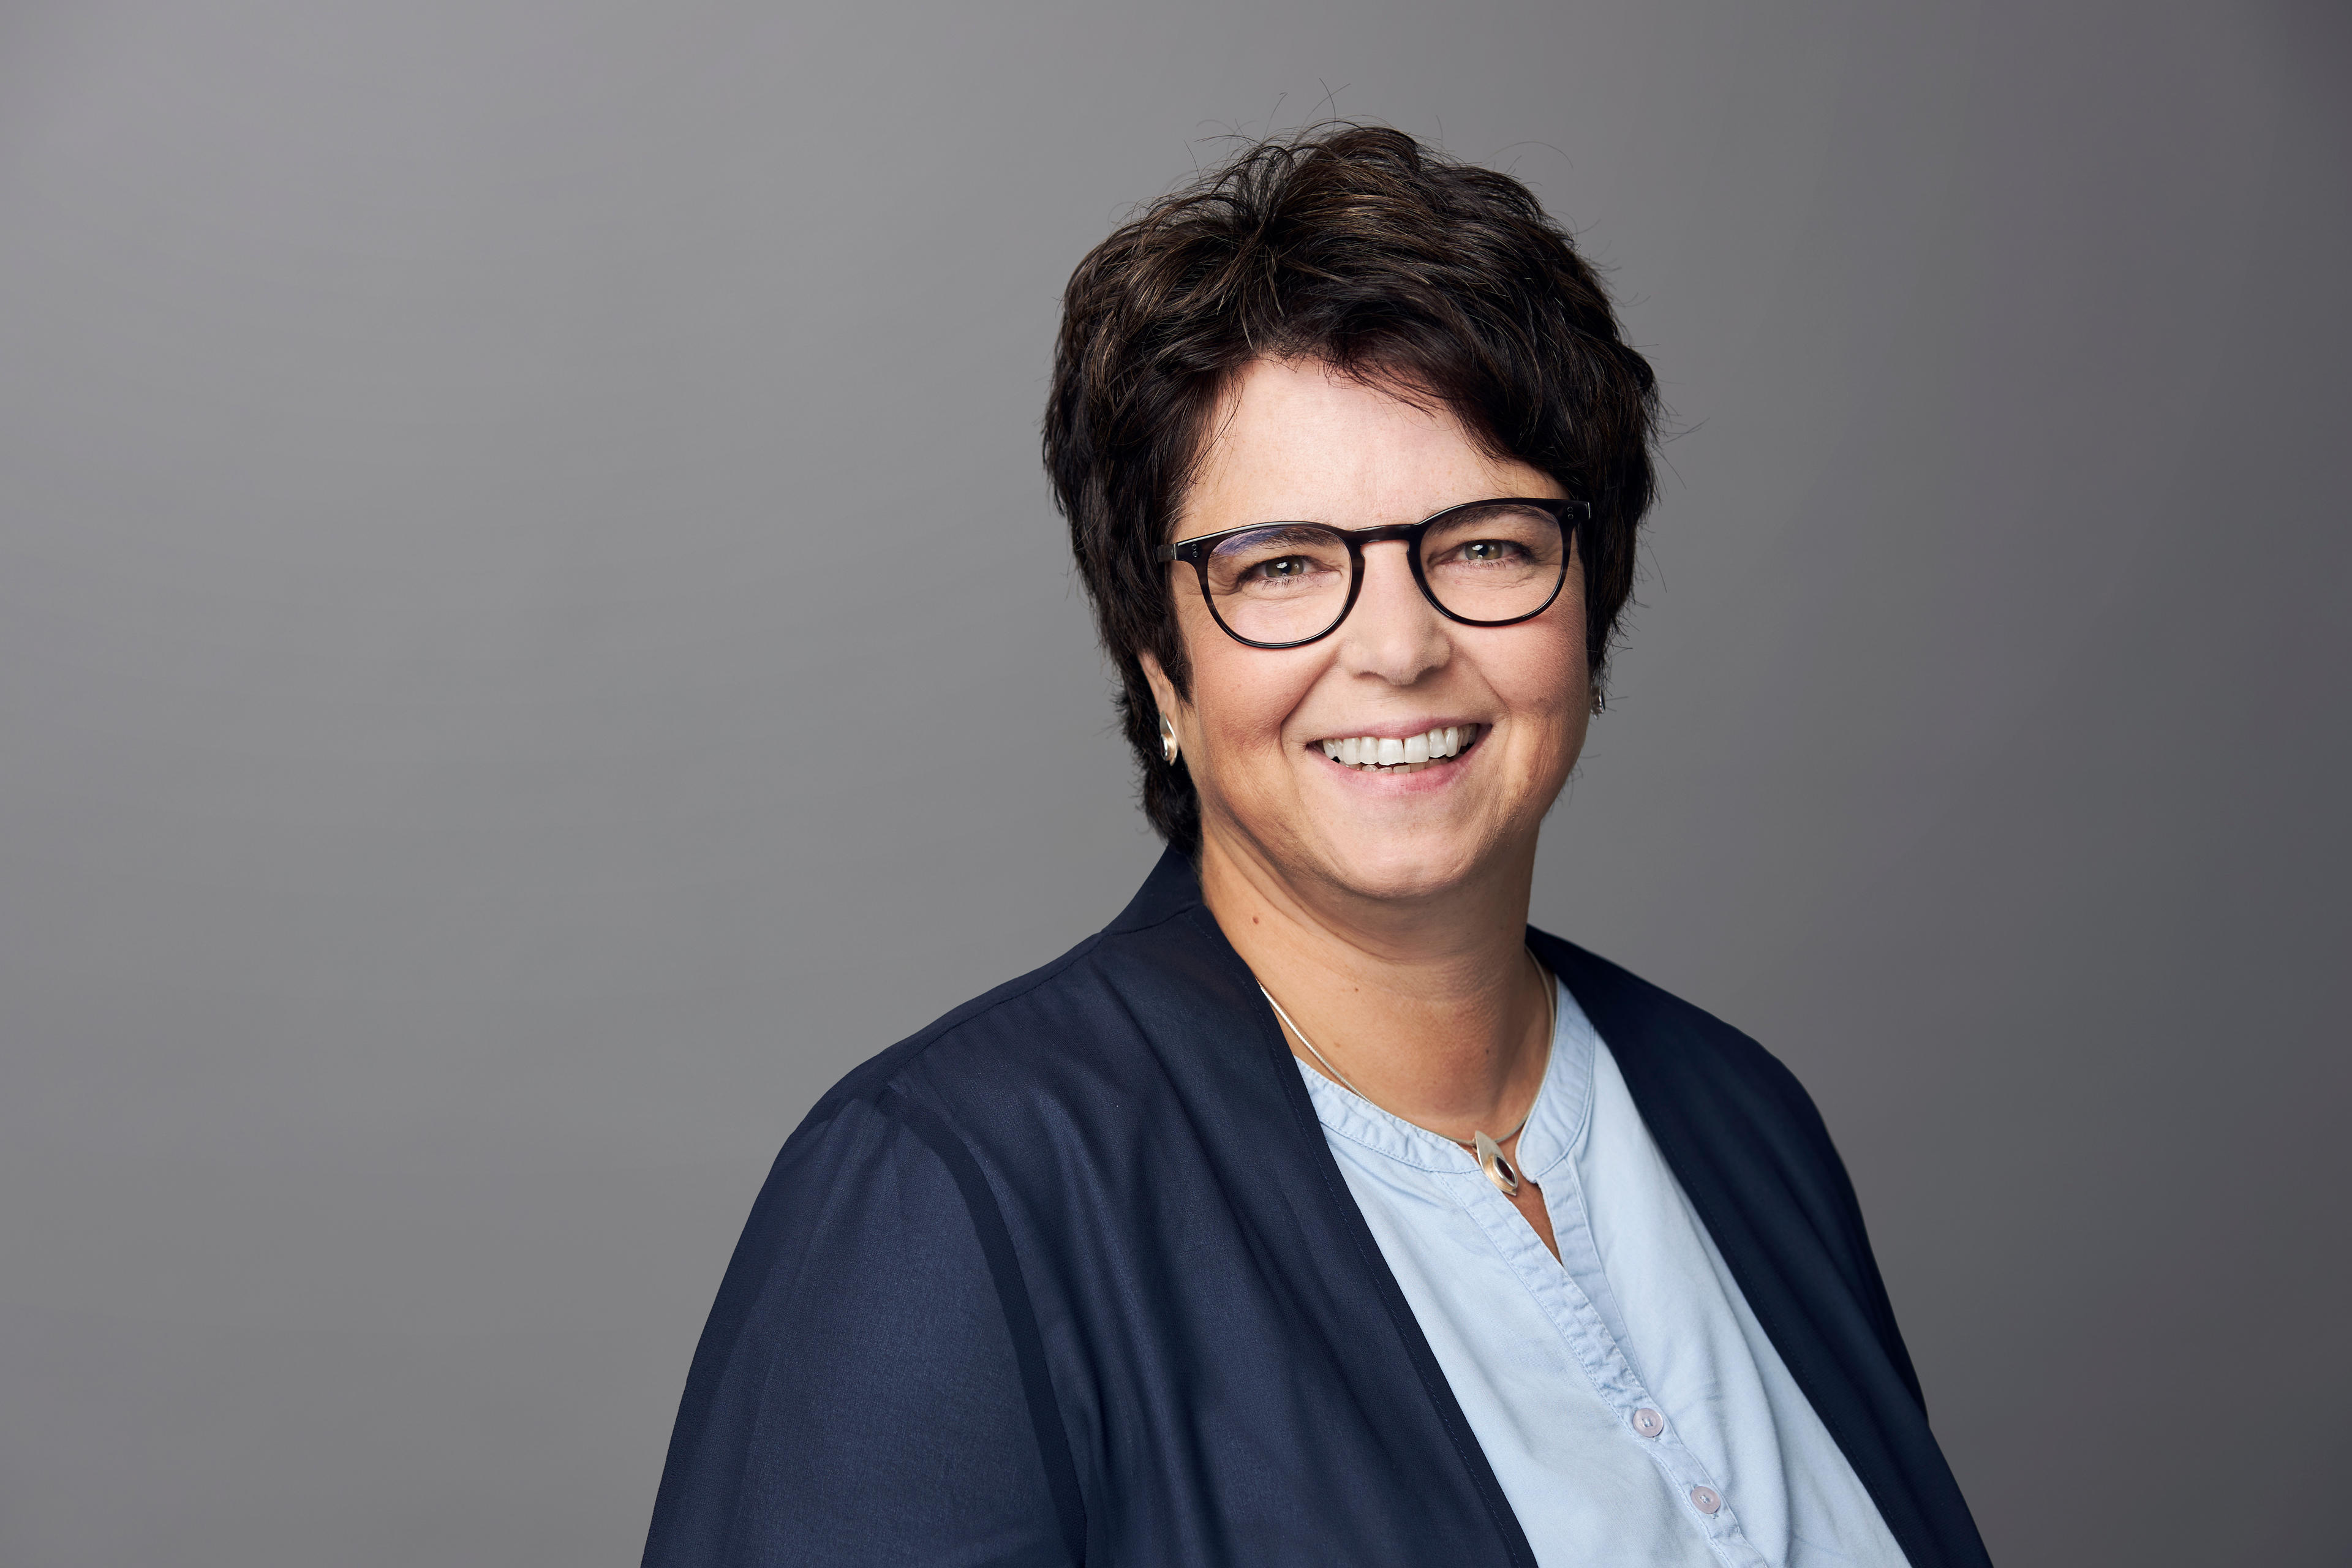 Petra Steinkamp ist seit über 20 Jahren erste Ansprechpartnerin der Kunden der Signal Iduna Döbler&Voß in Gütersloh. Sie ist die "gute Seele" im Team und Spezialistin für die unkomplizierte Schadenregulierung.